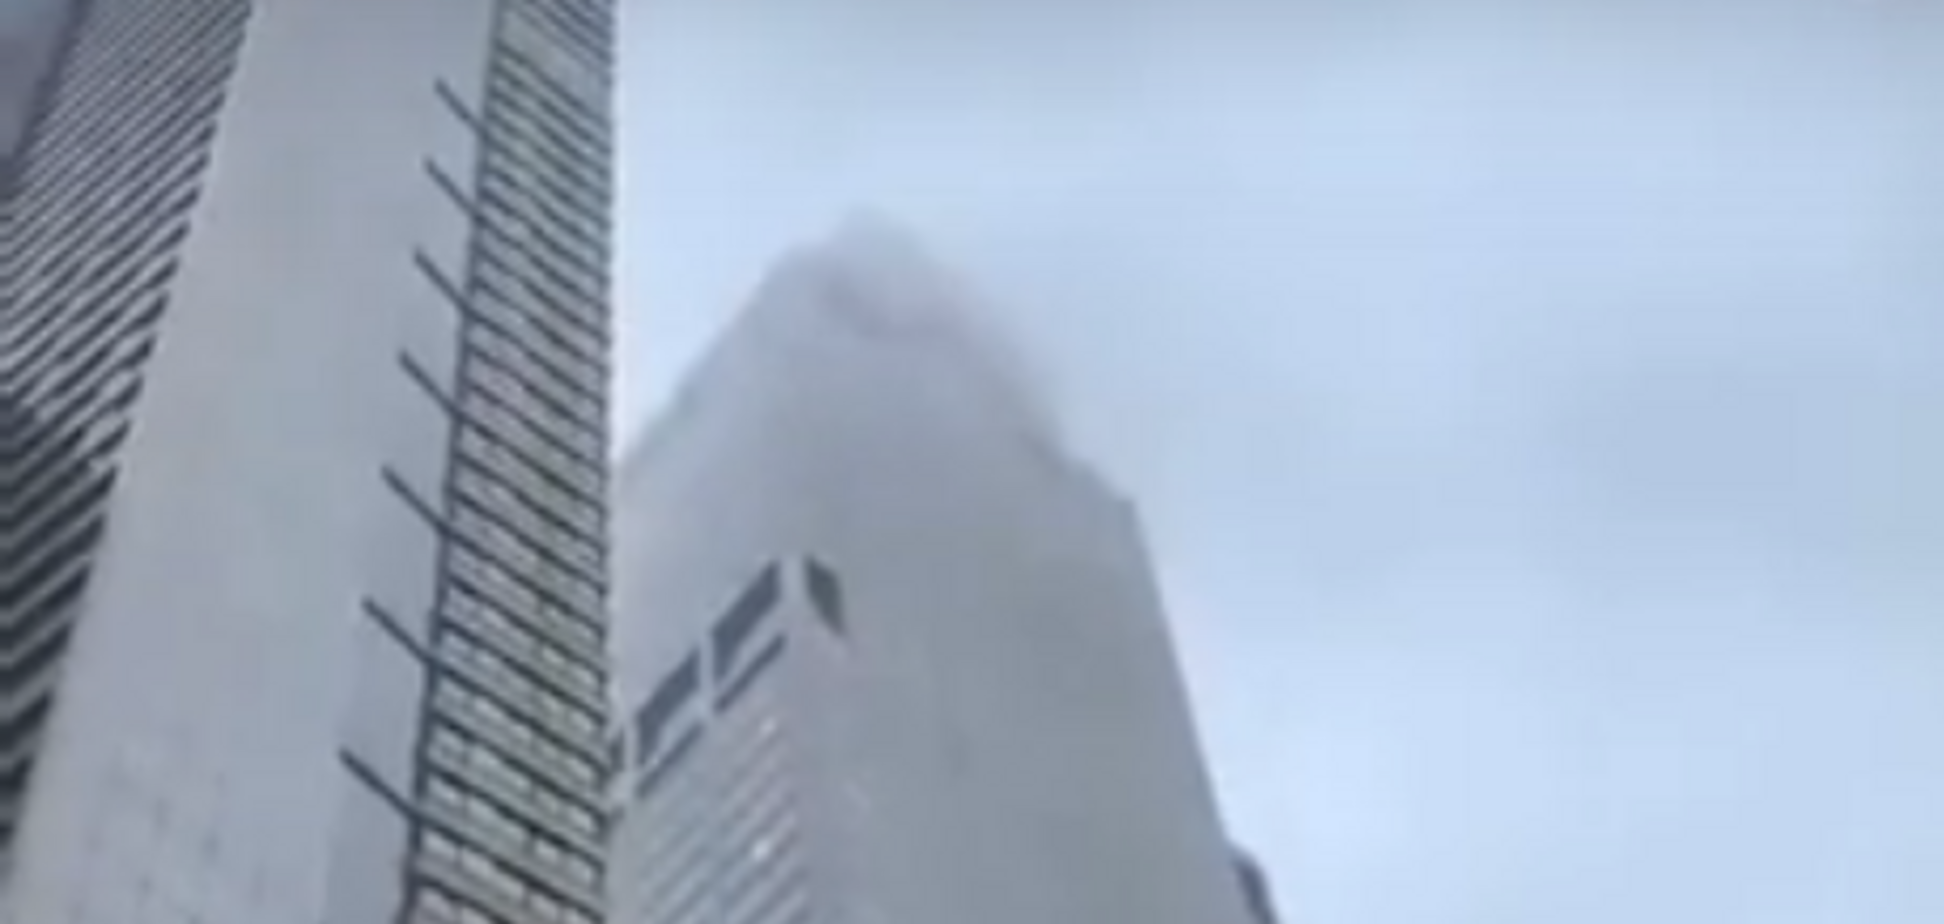 Вертоліт врізався в хмарочос у центрі Нью-Йорка